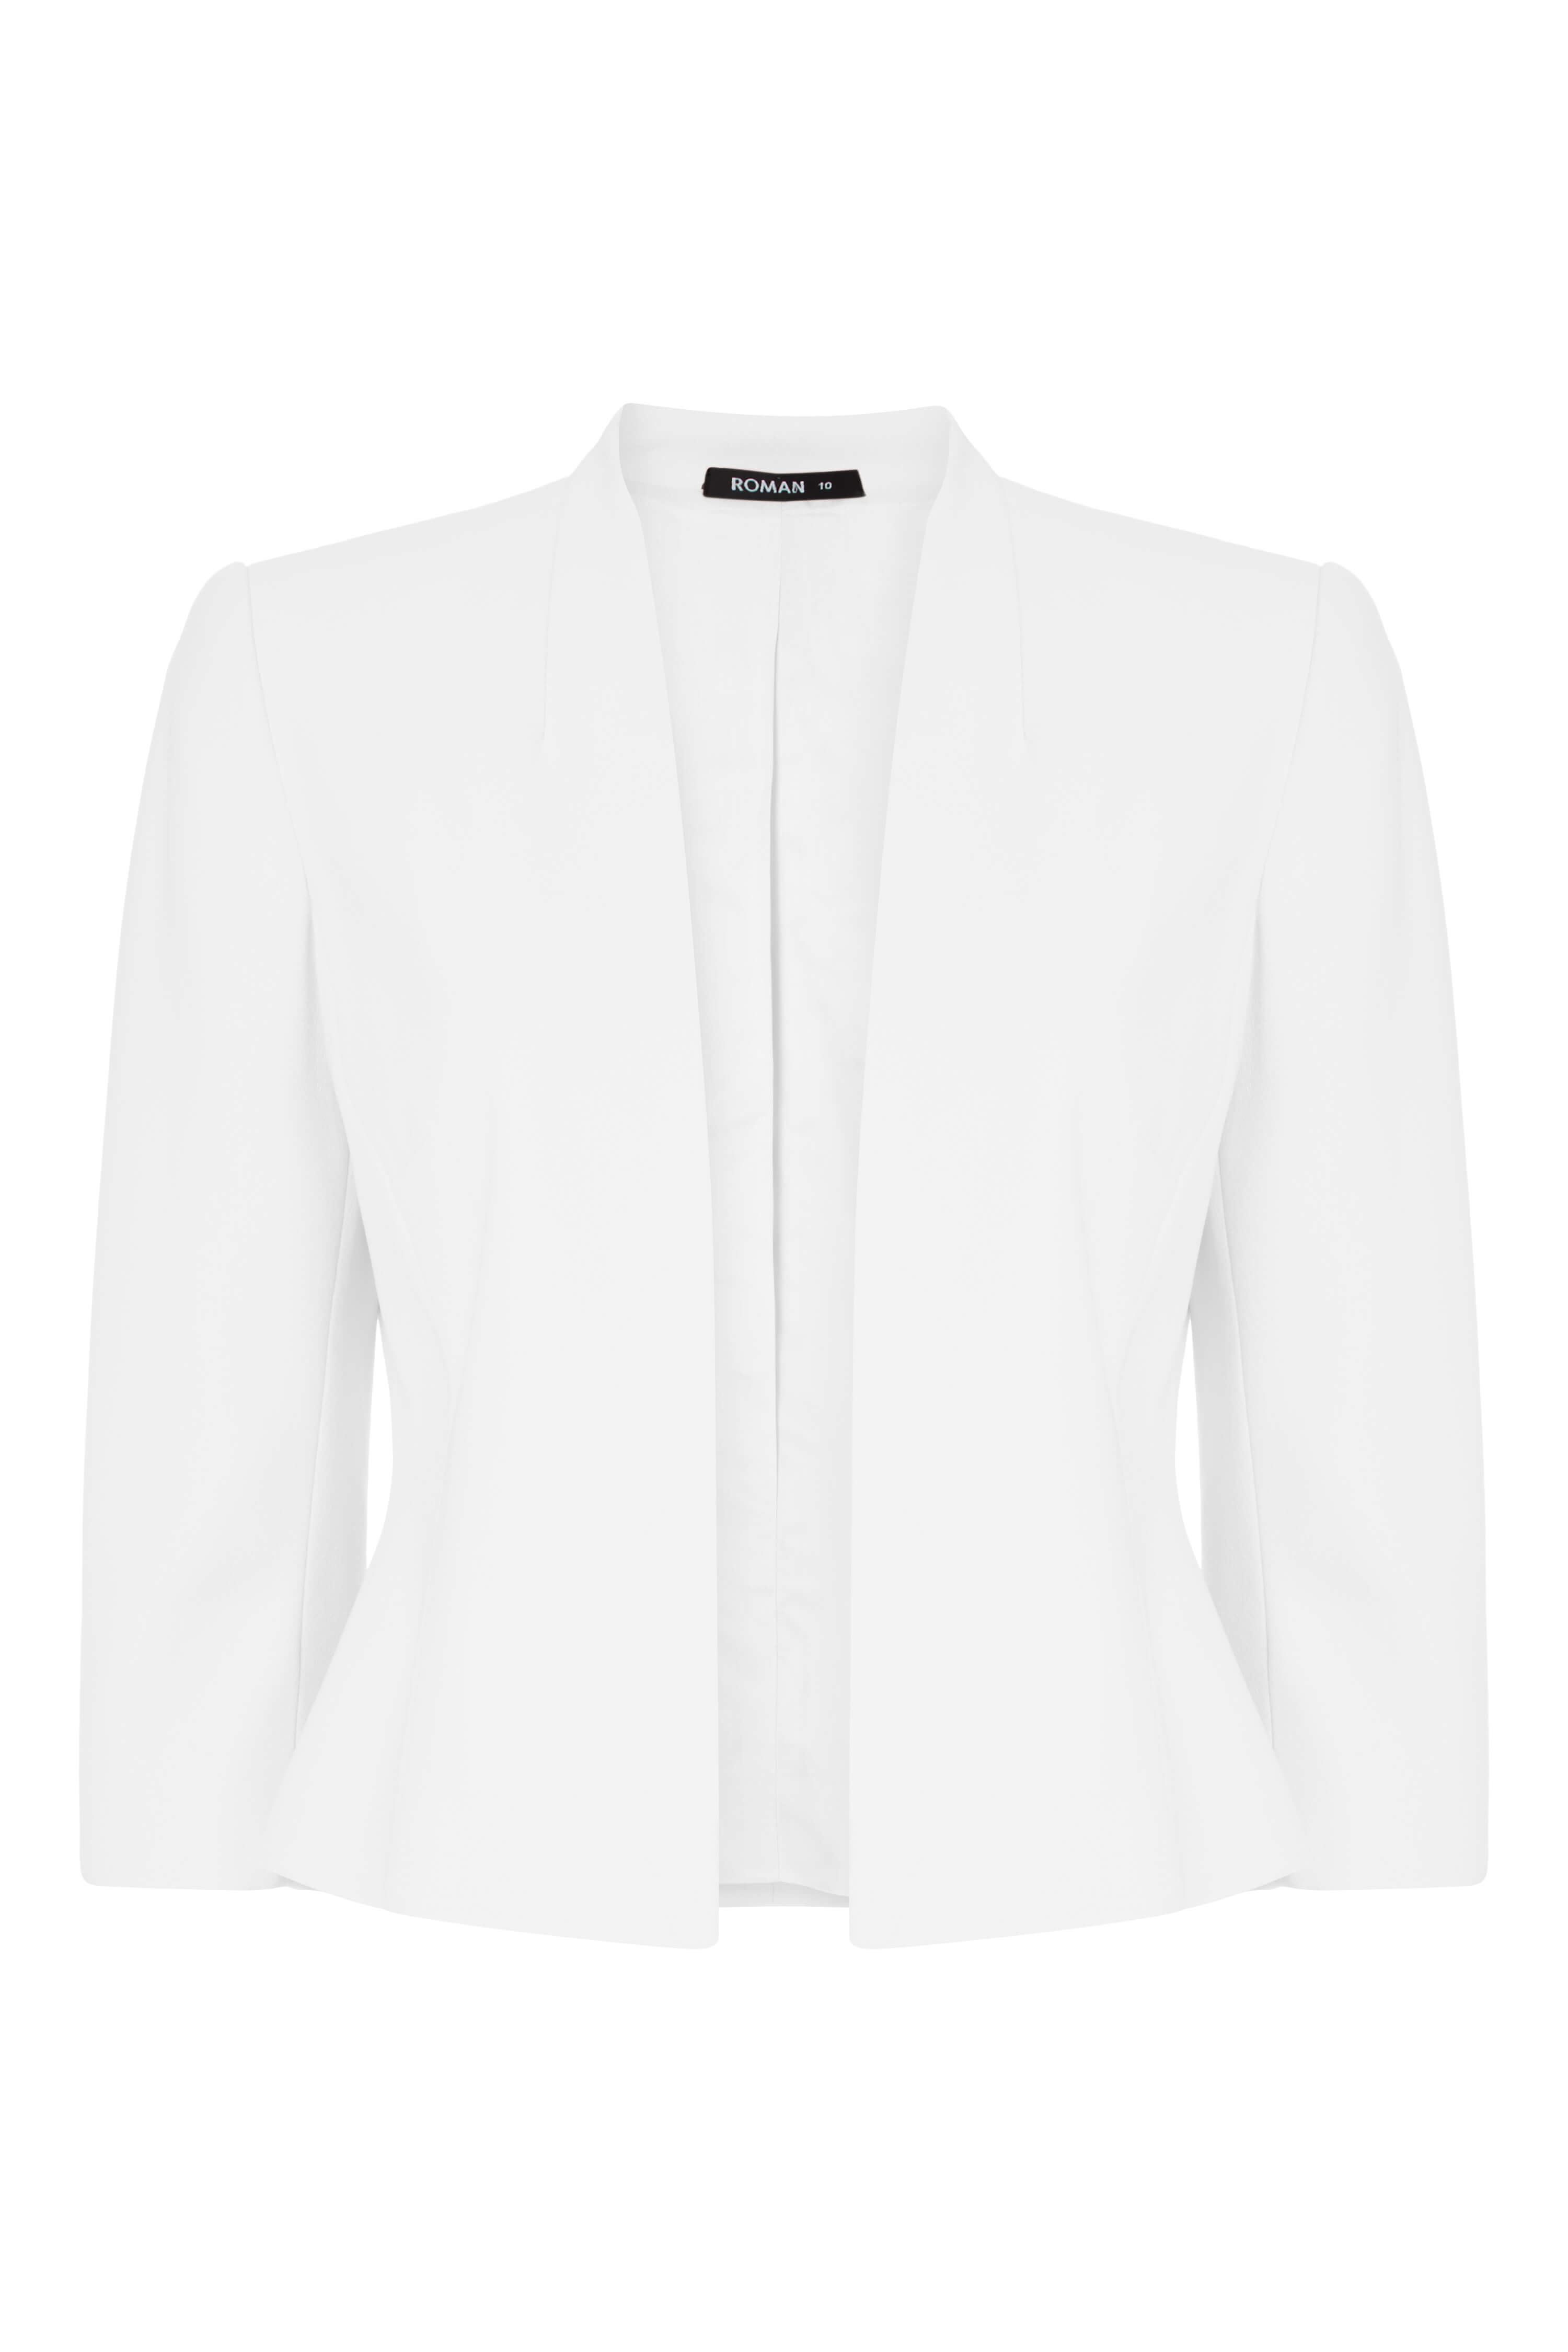 roman white jacket